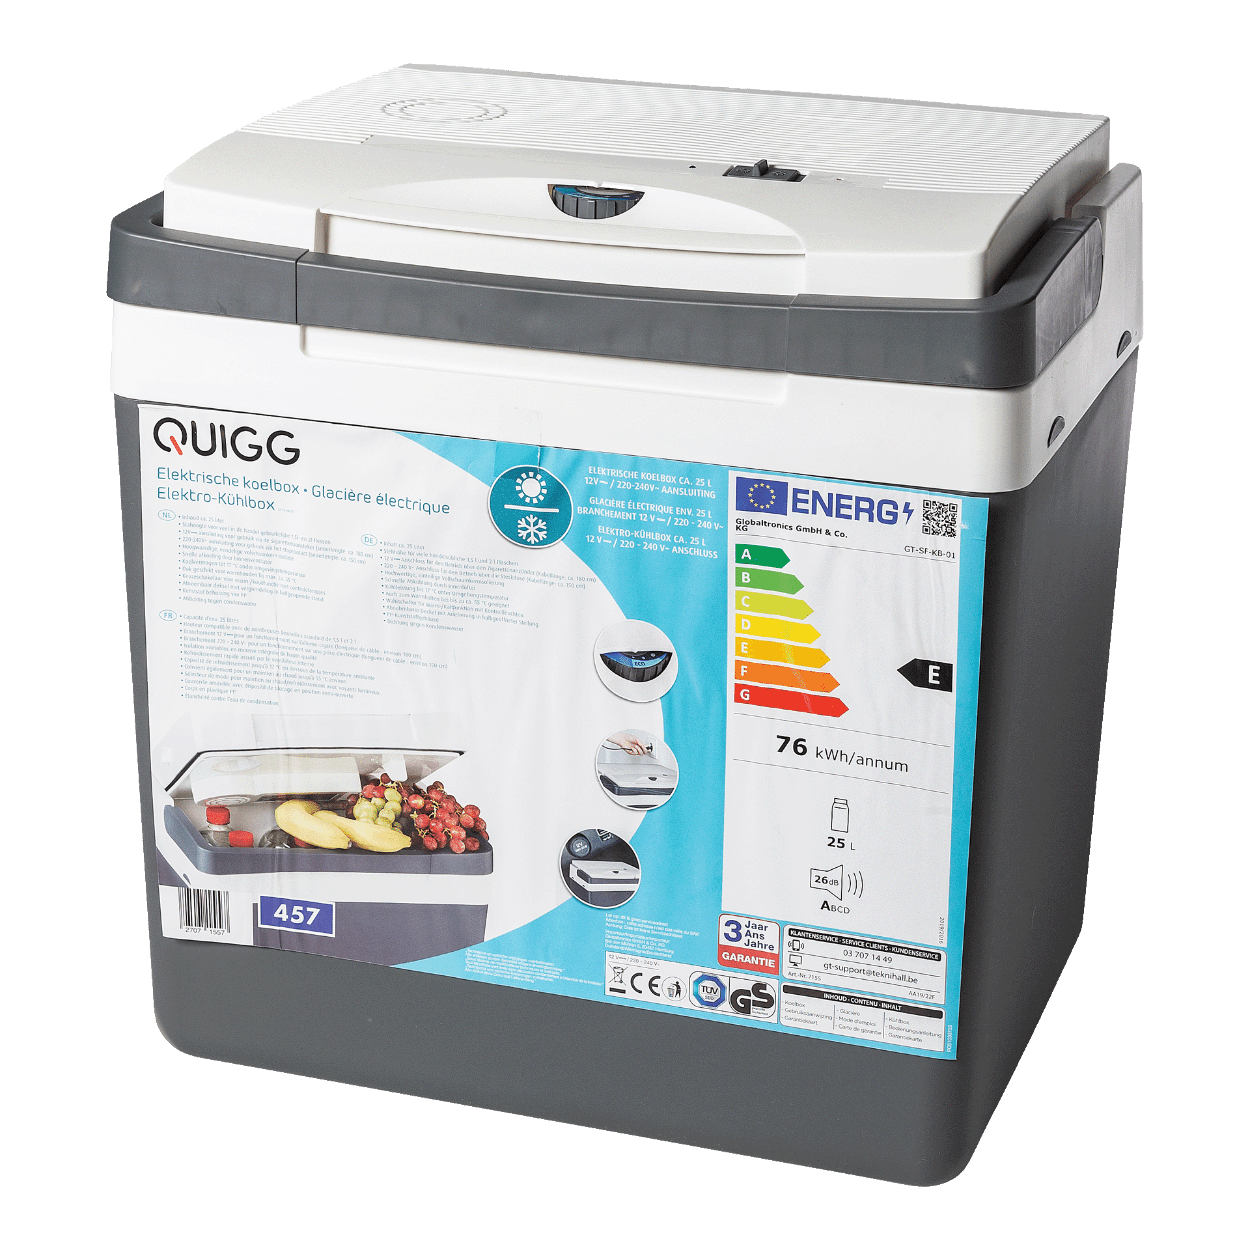 QUIGG® Elektrische koelbox bij ALDI België